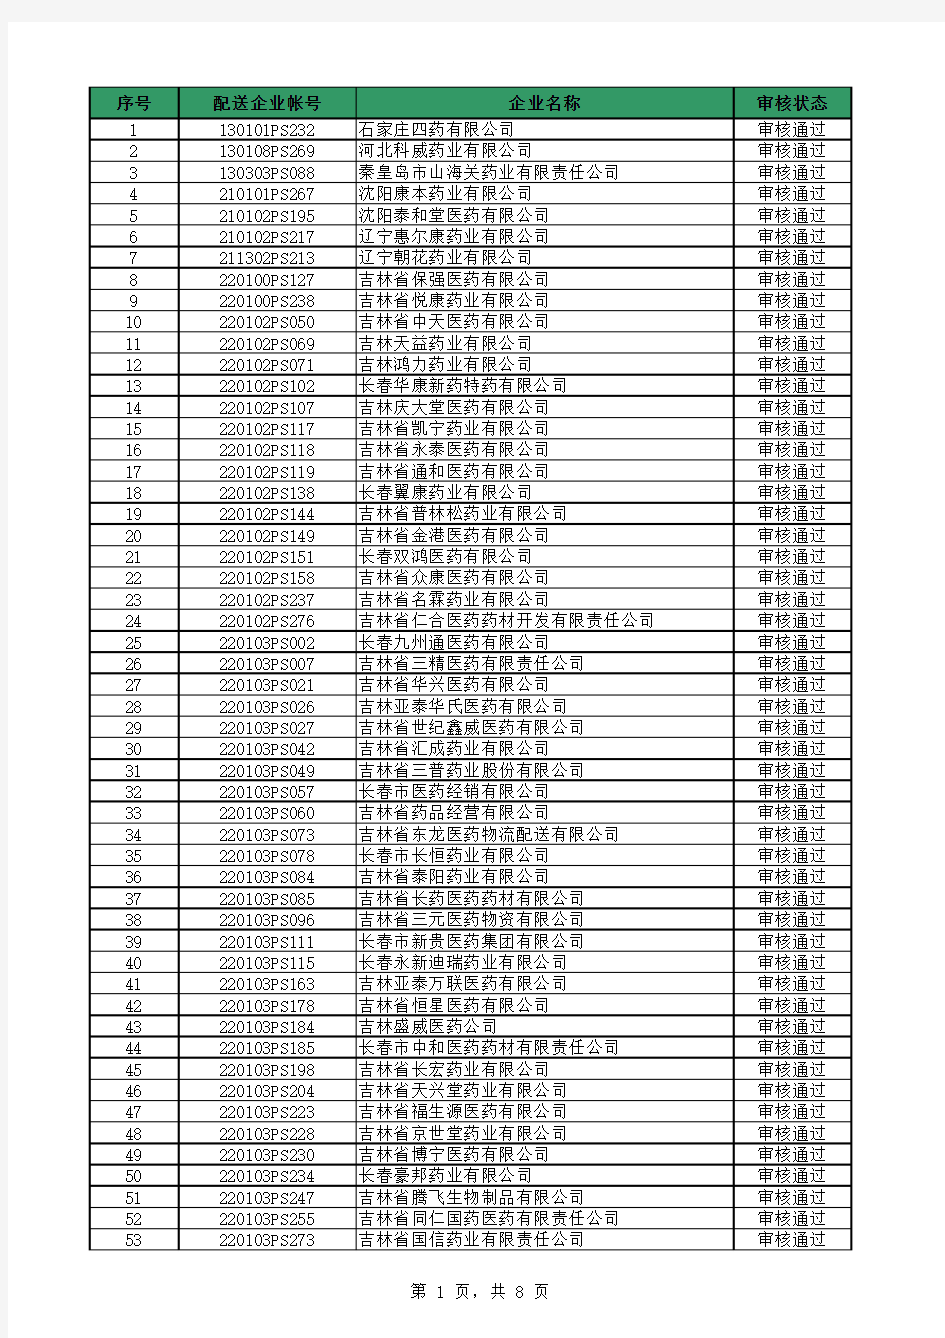 2013年度吉林省医疗机构药品集中采购配送企业名单